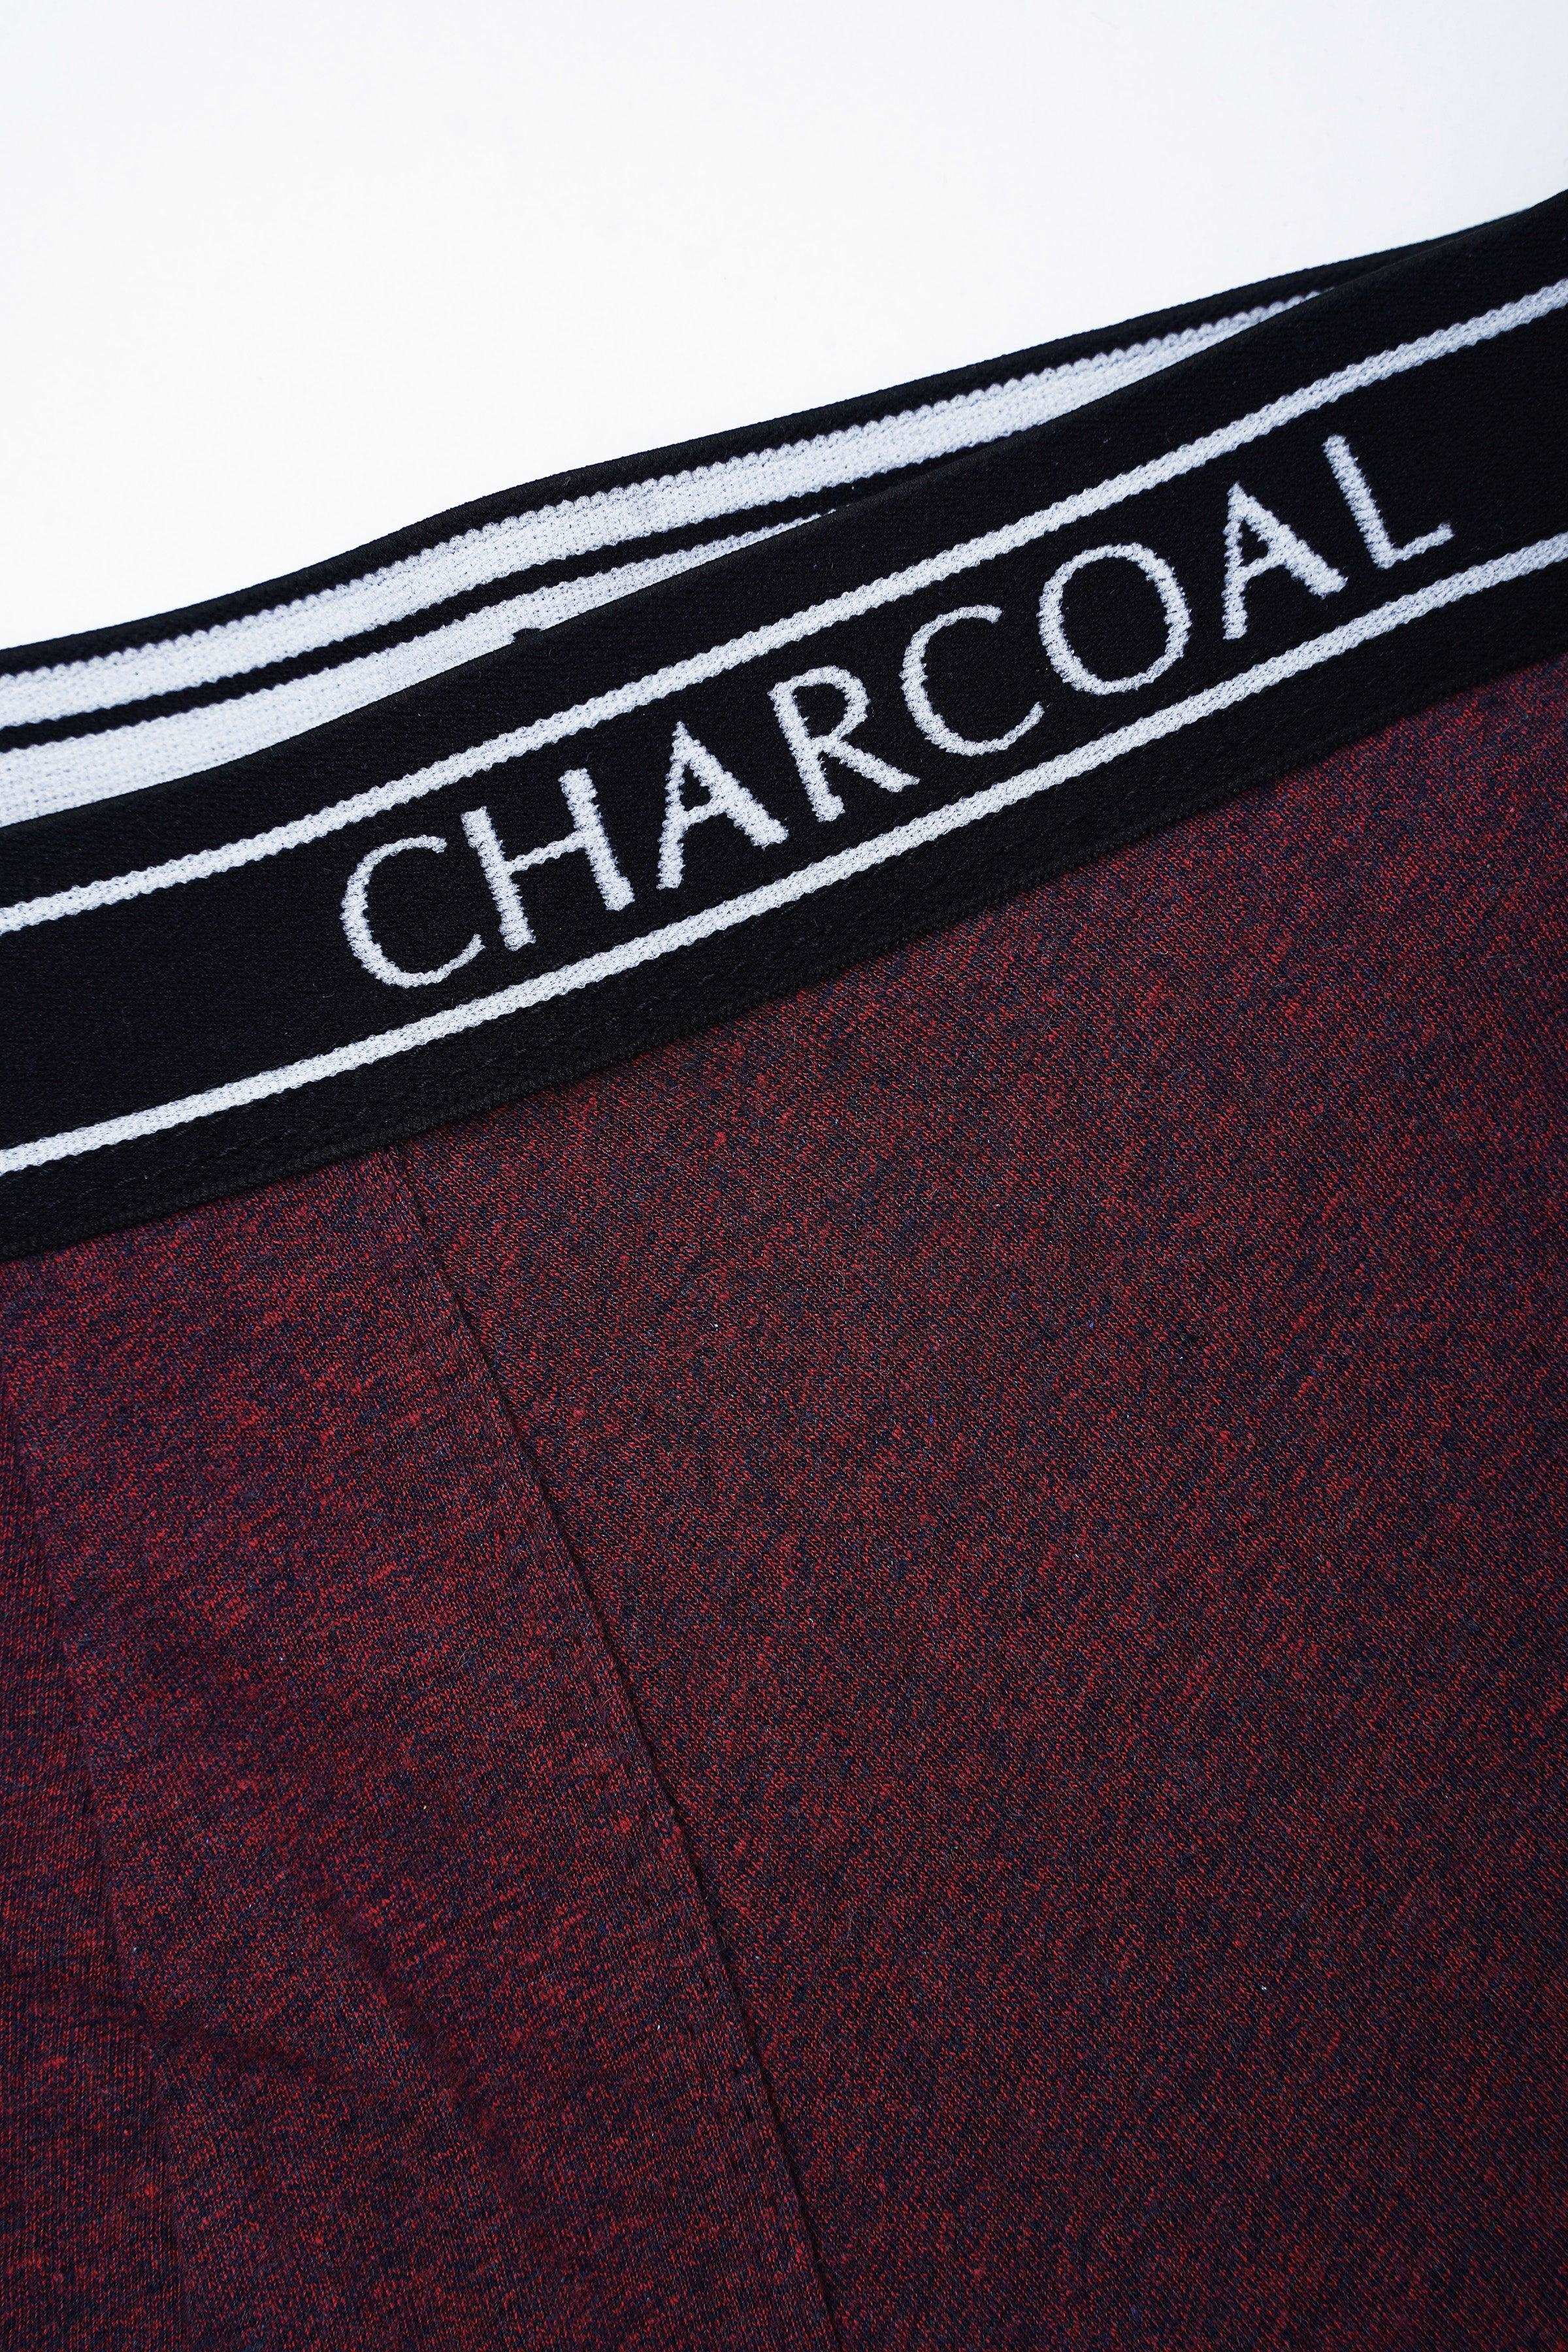 BOXER SHORTS PLAIN MAROON at Charcoal Clothing